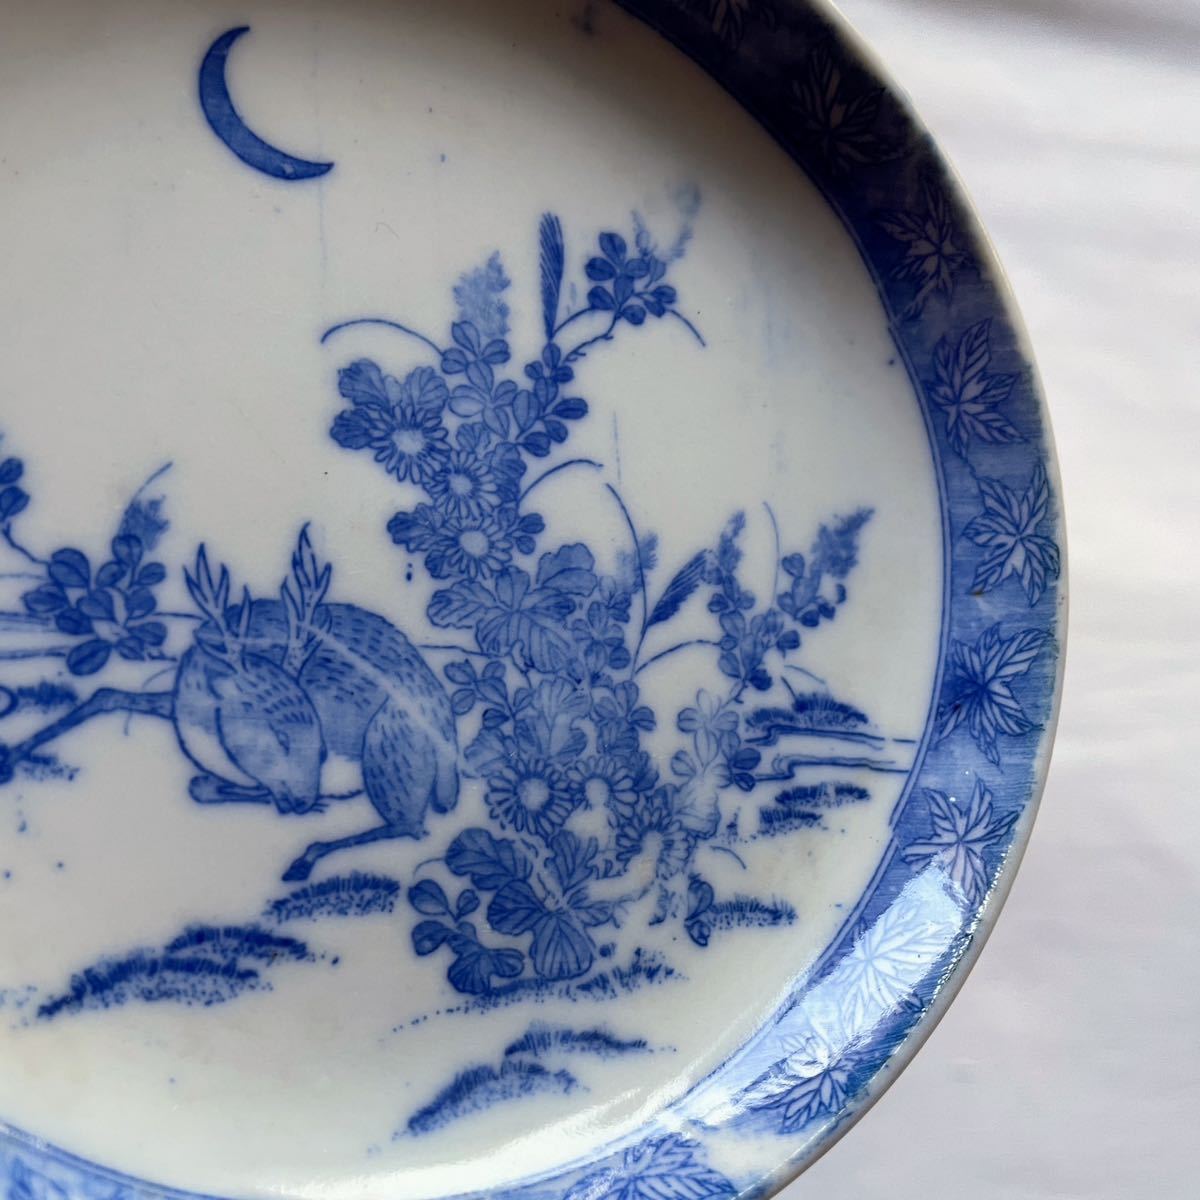 明治〜大正 印判 小皿 鹿と紅葉 Meiji imban blue and white porcelain small plate, autumn maple leaves and deer_画像4